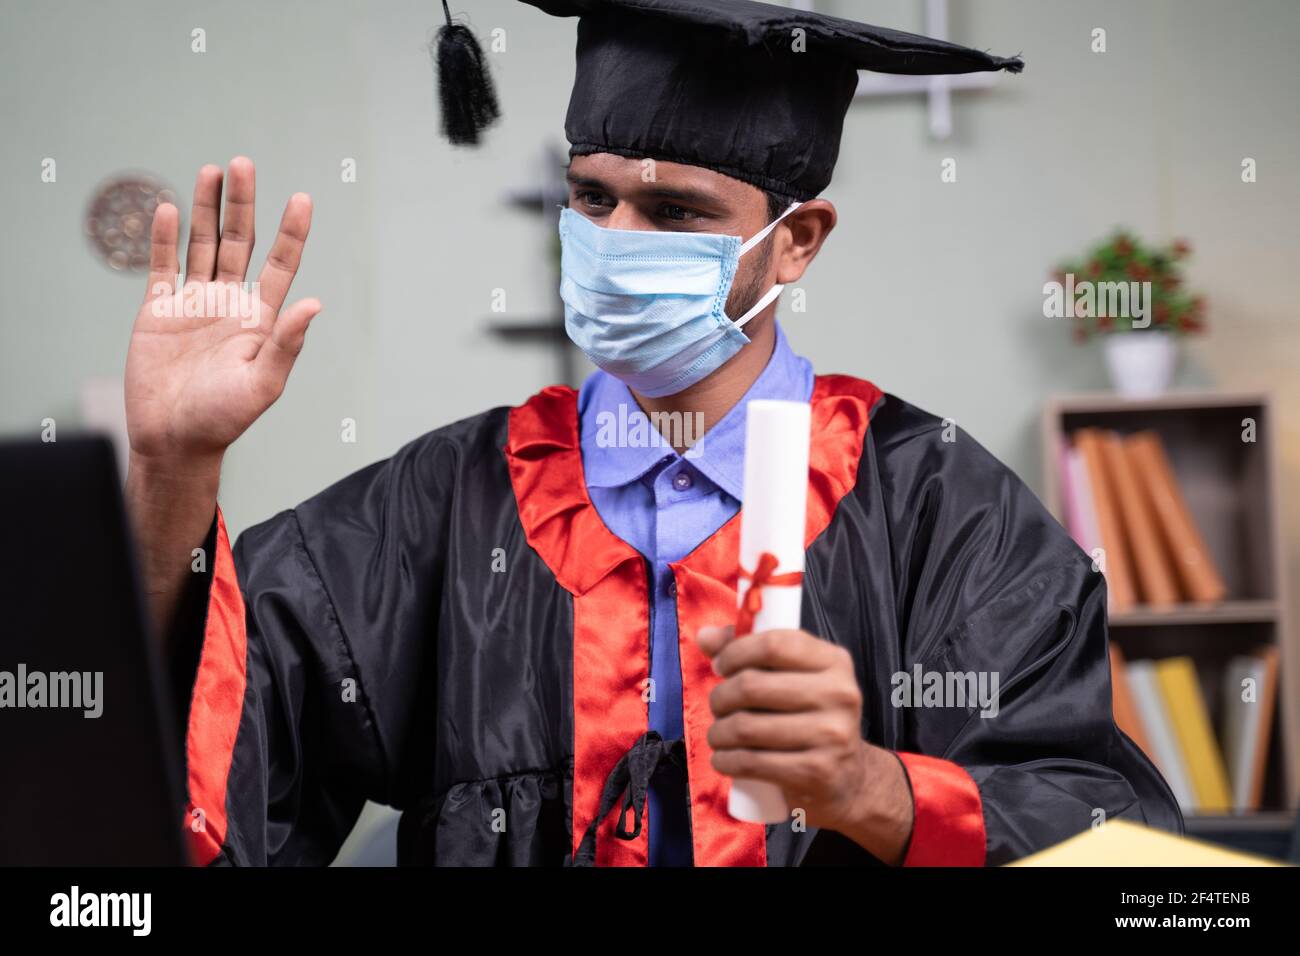 Studente con maschera medica che partecipa a una cerimonia virtuale di laurea video da casa su laptop: concetto di assistenza sanitaria, sicurezza e novità normale Foto Stock